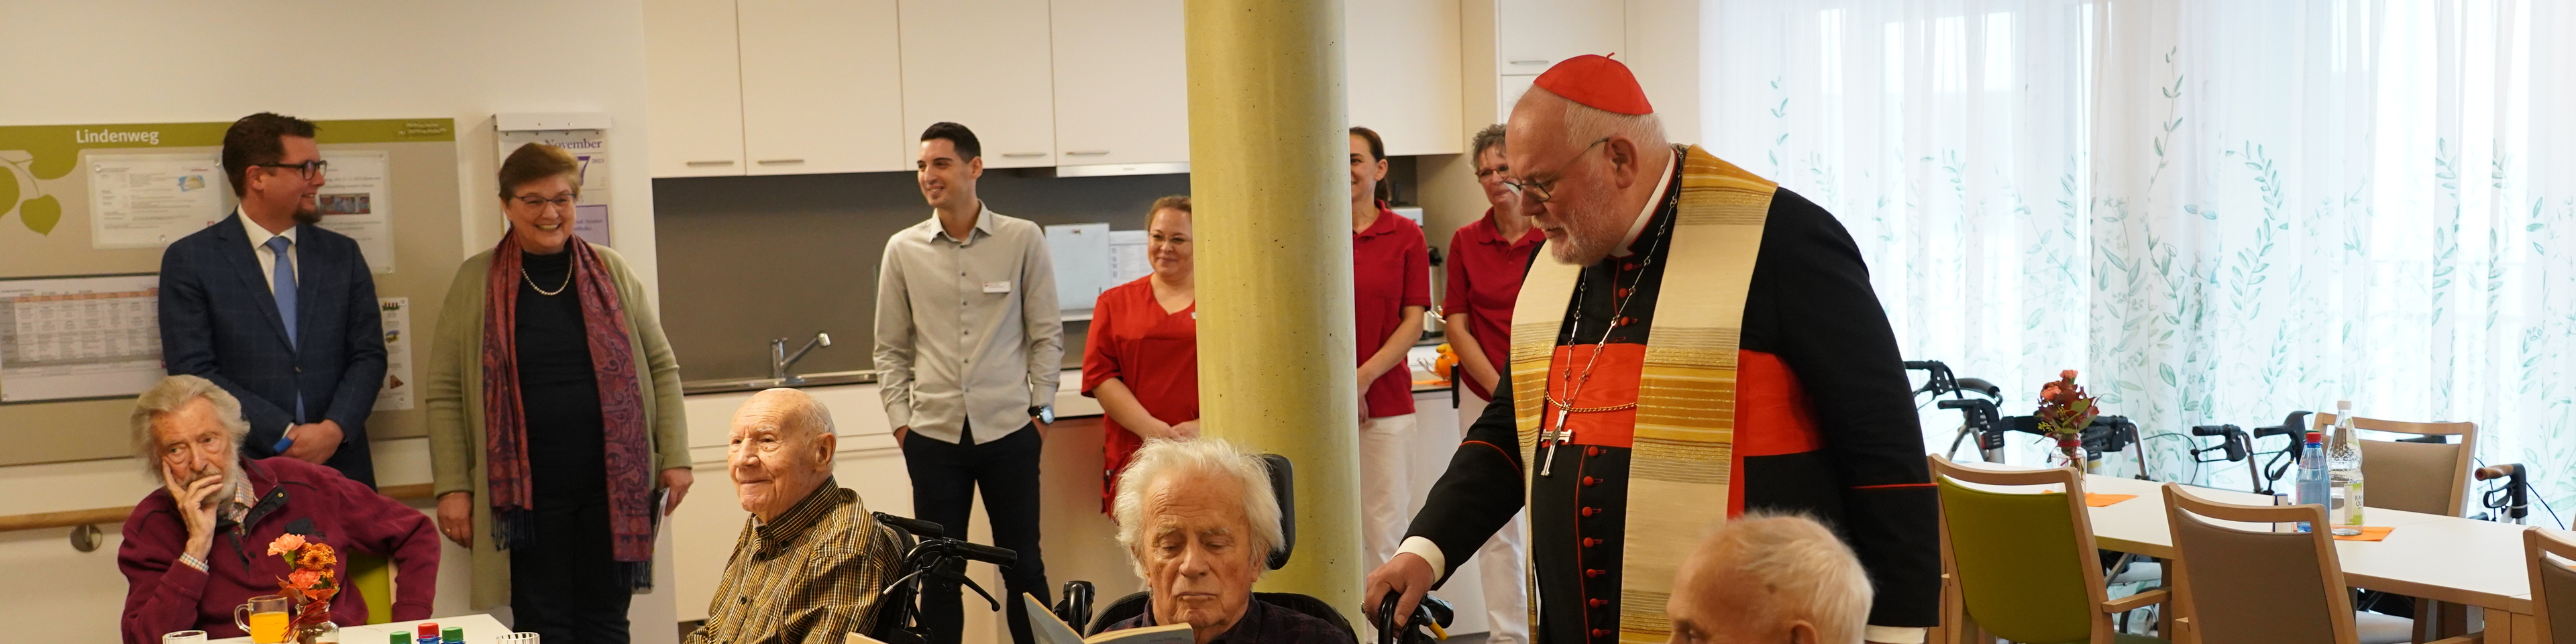 Kardinal Reinhard Marx im Gespräch mit Bewohnern und Bewohnerinnen des neuen Caritas Altenheims Don Bosco. | © Foh/Caritas München-Freising